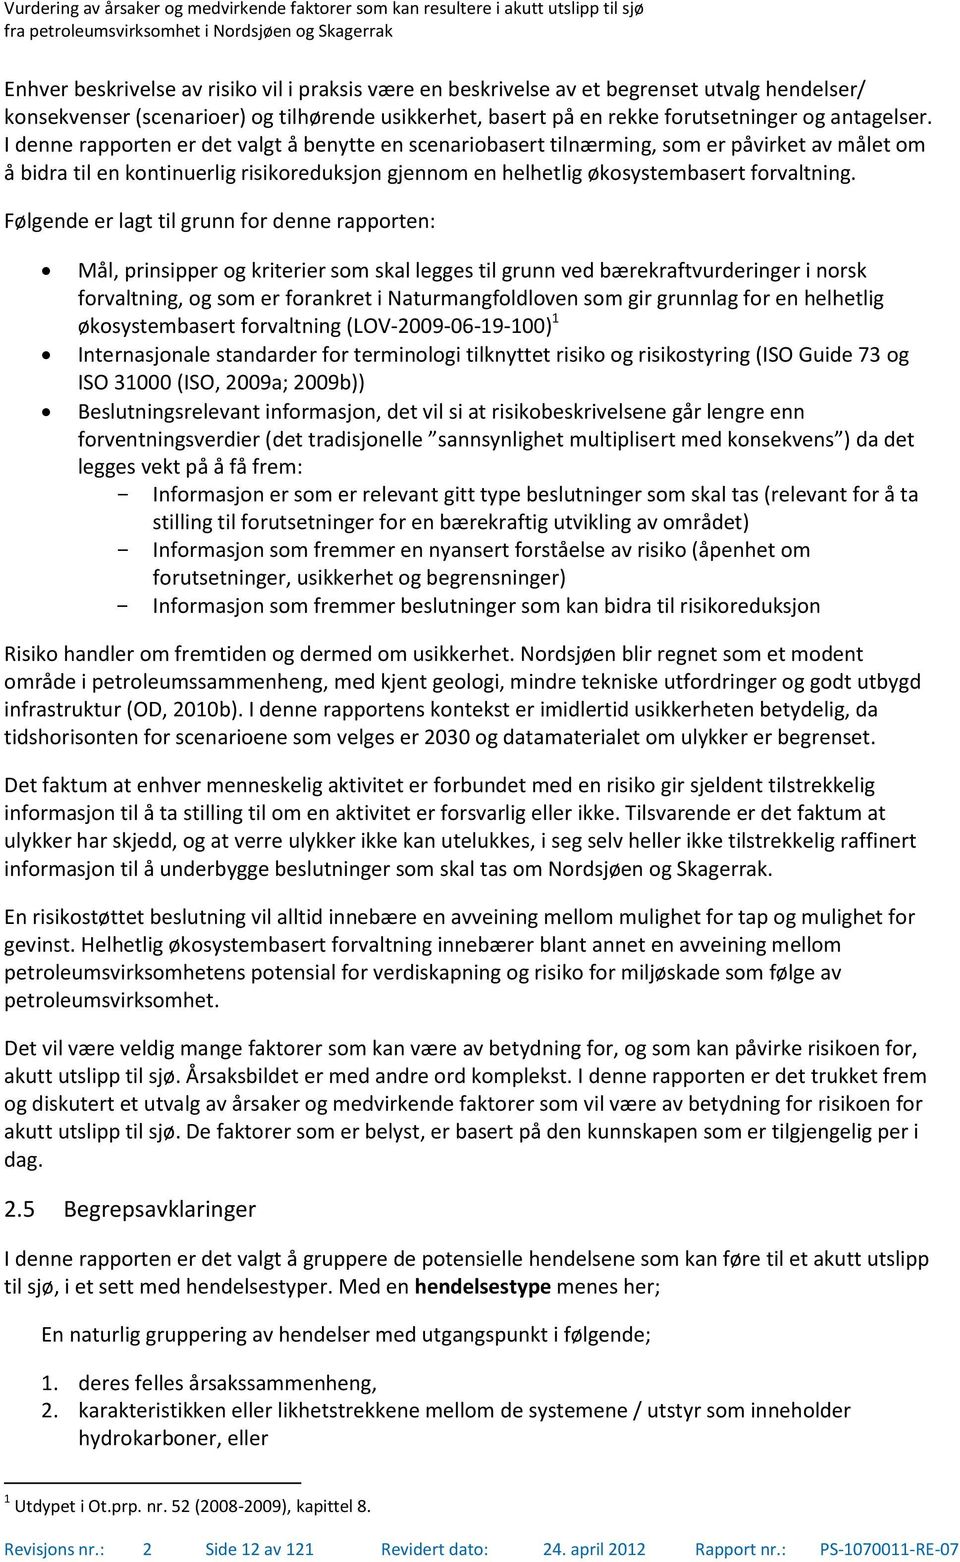 Følgende er lagt til grunn for denne rapporten: Mål, prinsipper og kriterier som skal legges til grunn ved bærekraftvurderinger i norsk forvaltning, og som er forankret i Naturmangfoldloven som gir